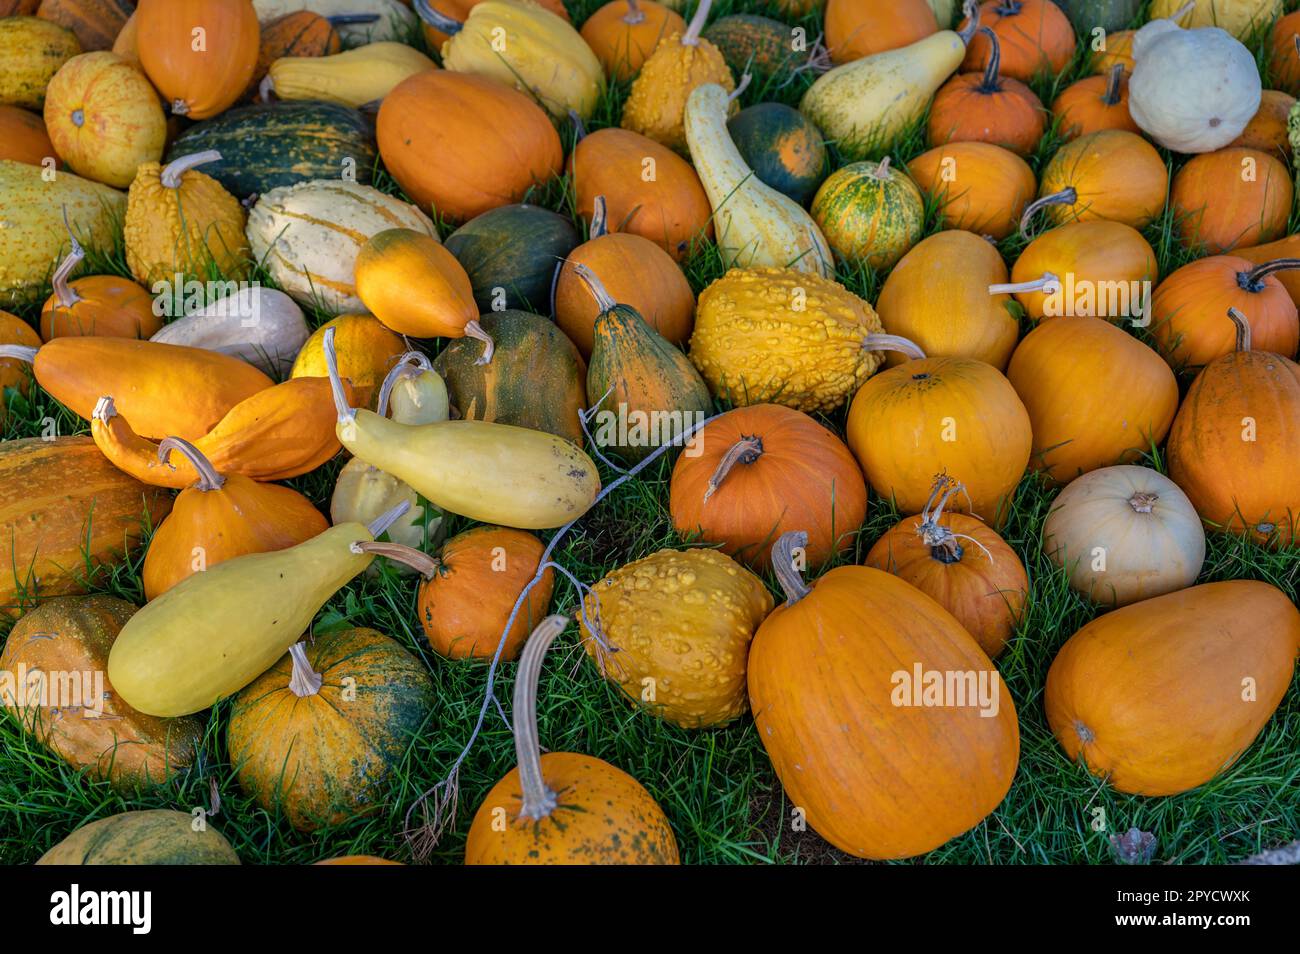 Variazione di diversi colori arancio, giallo e verde, zucca ornamentale rotonda e a forma di uovo sdraiata su un prato, nessuna gente Foto Stock